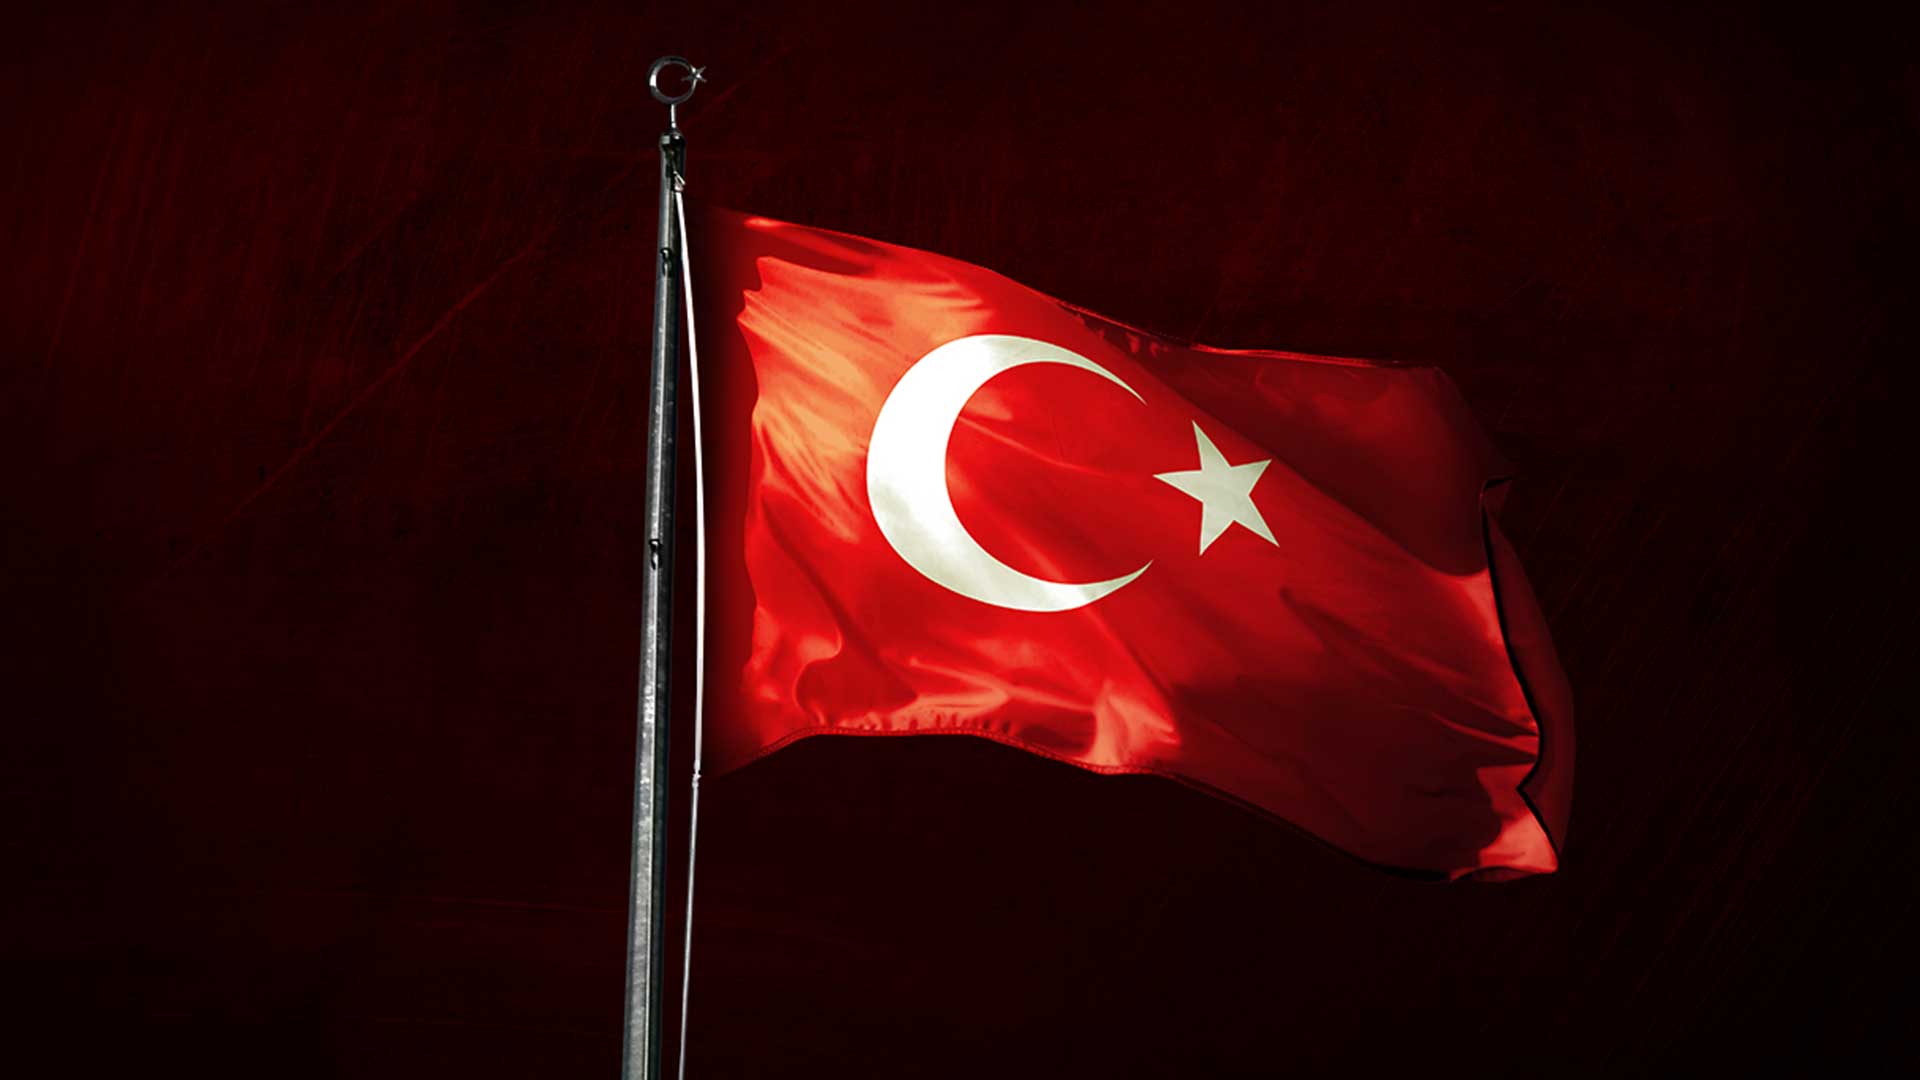 turk bayragi resimleri 2020 3